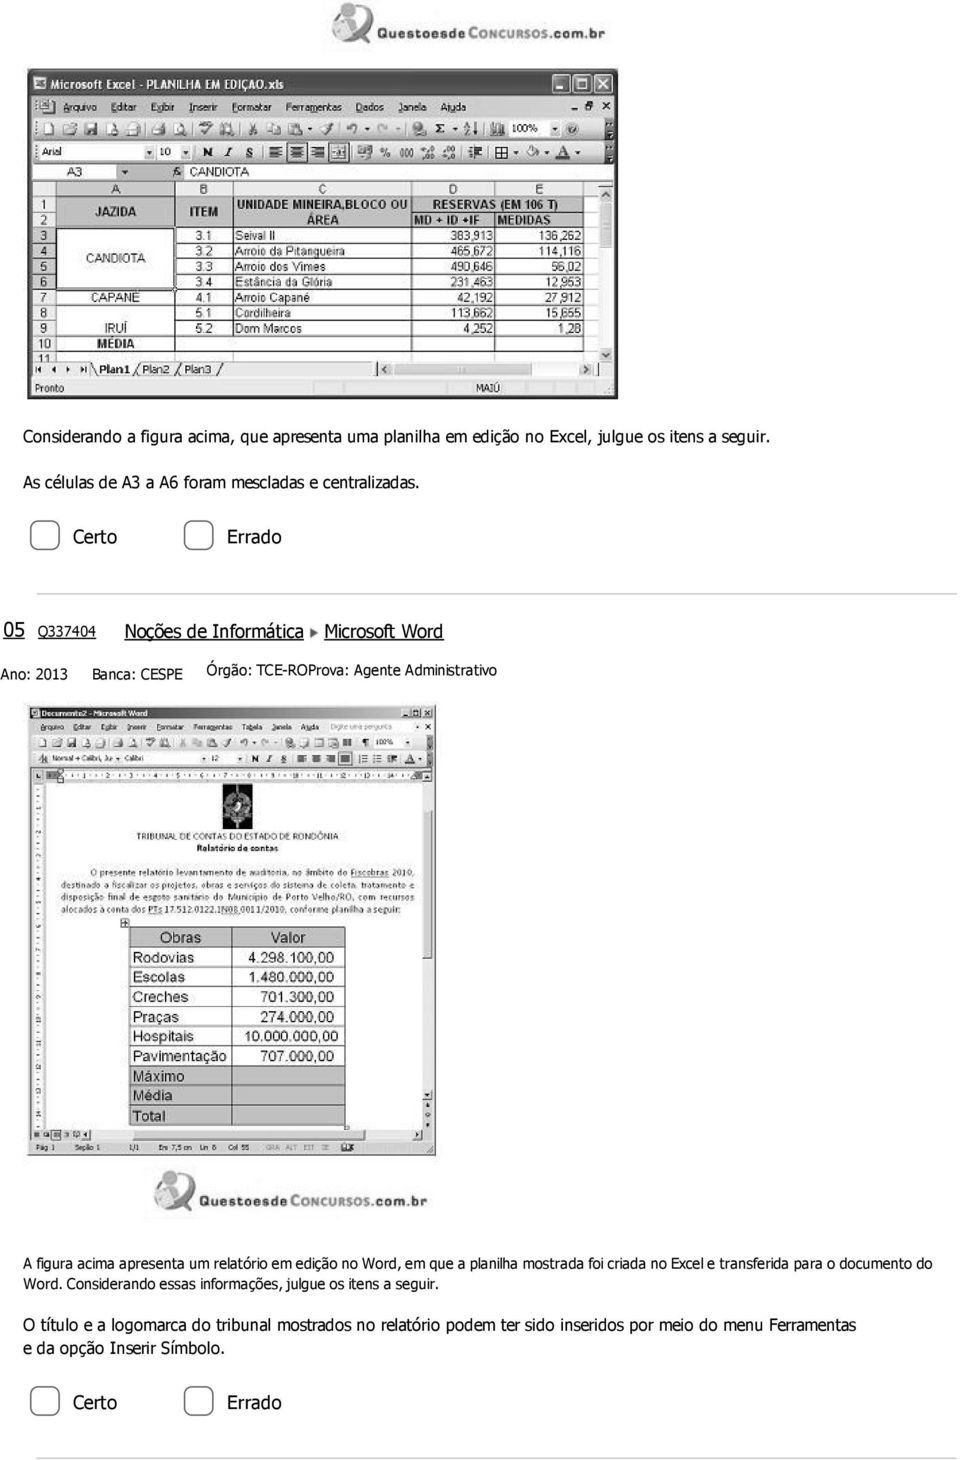 edição no Word, em que a planilha mostrada foi criada no Excel e transferida para o documento do Word.